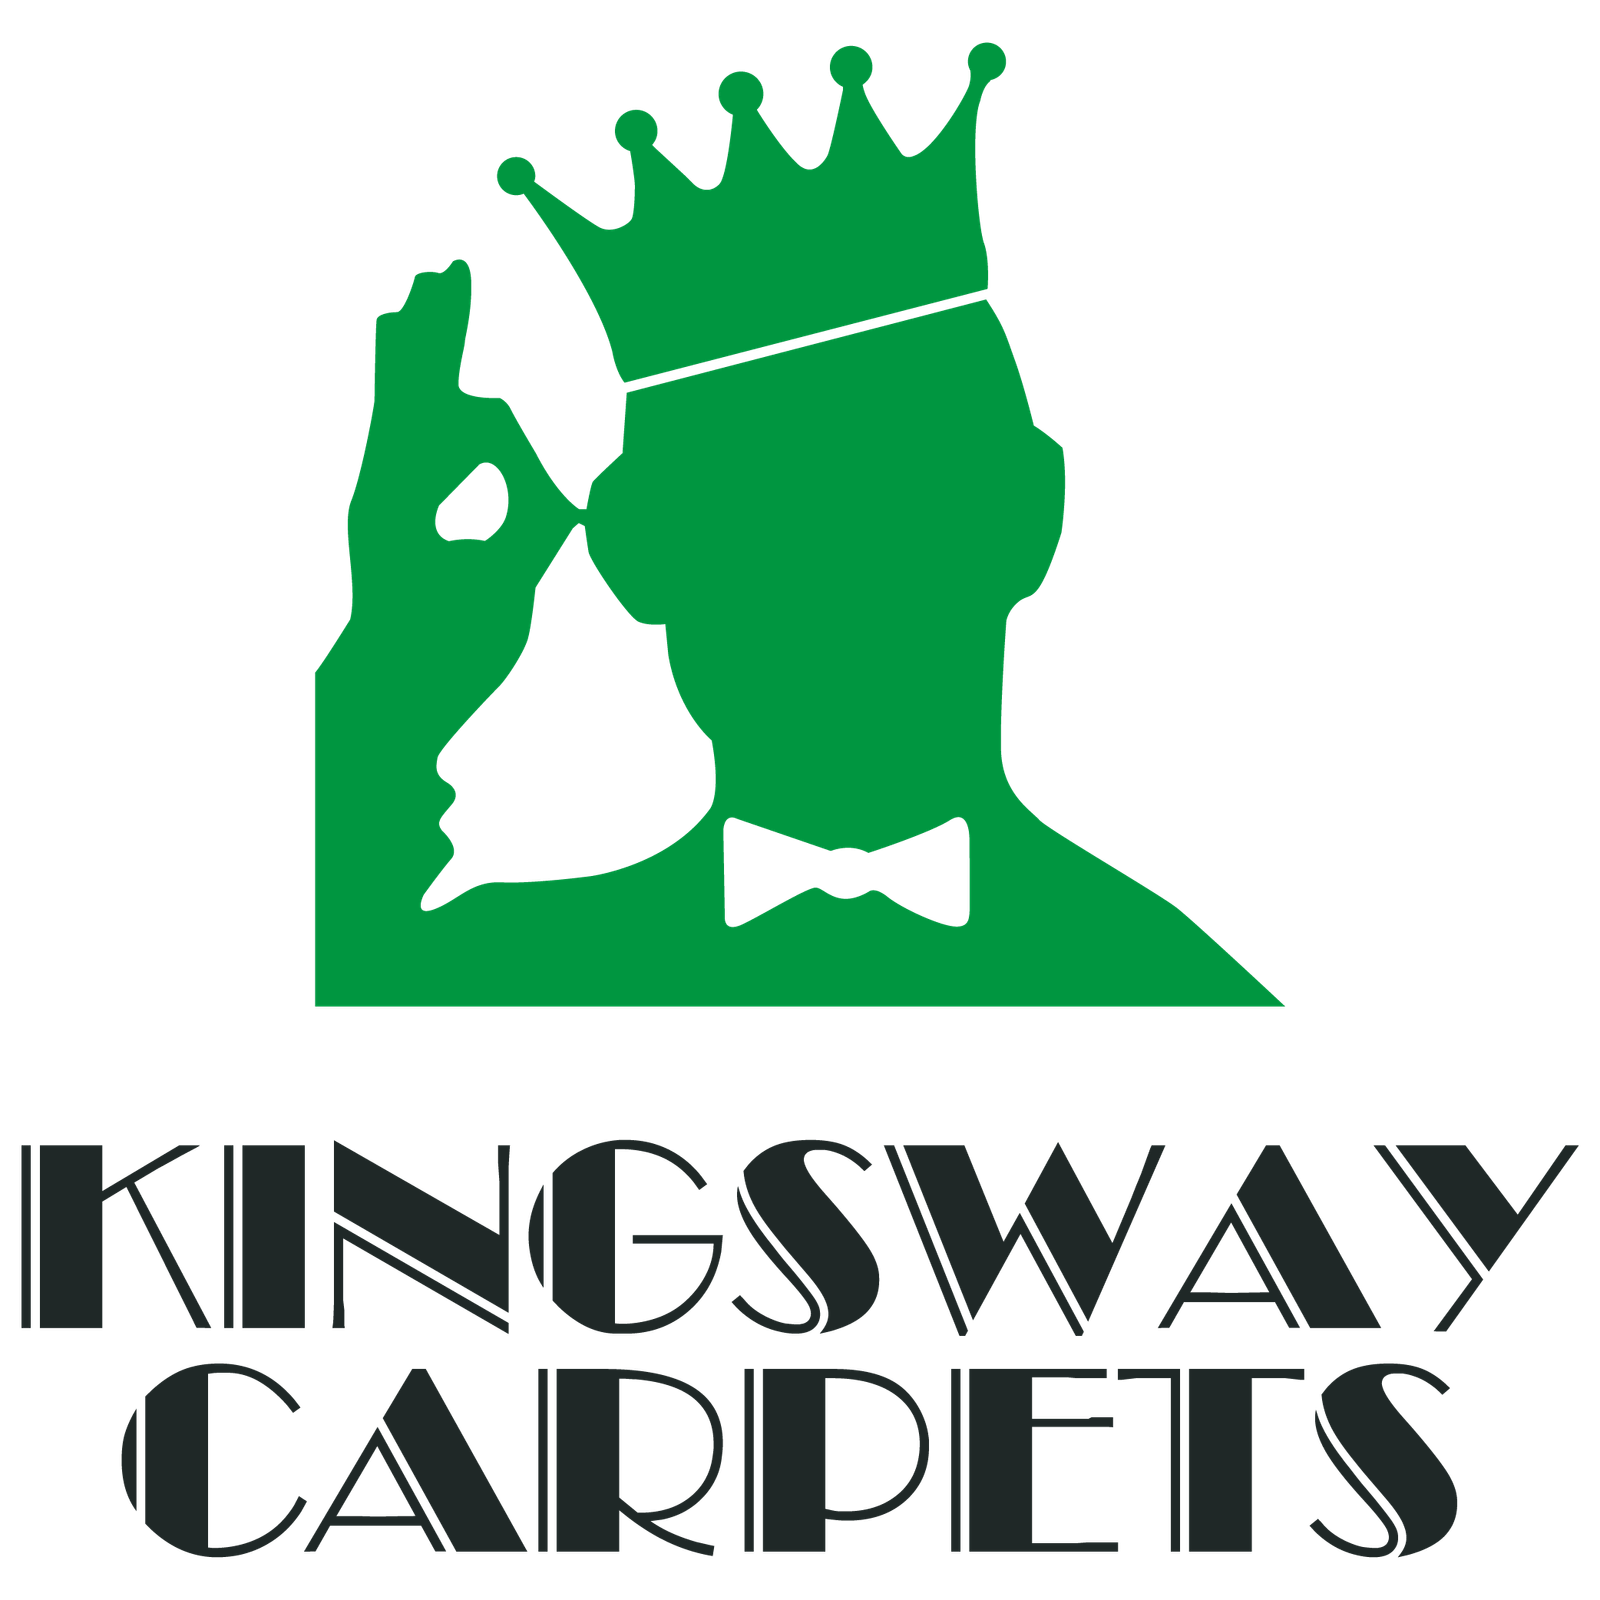 Kingsway Carpets & Flooring